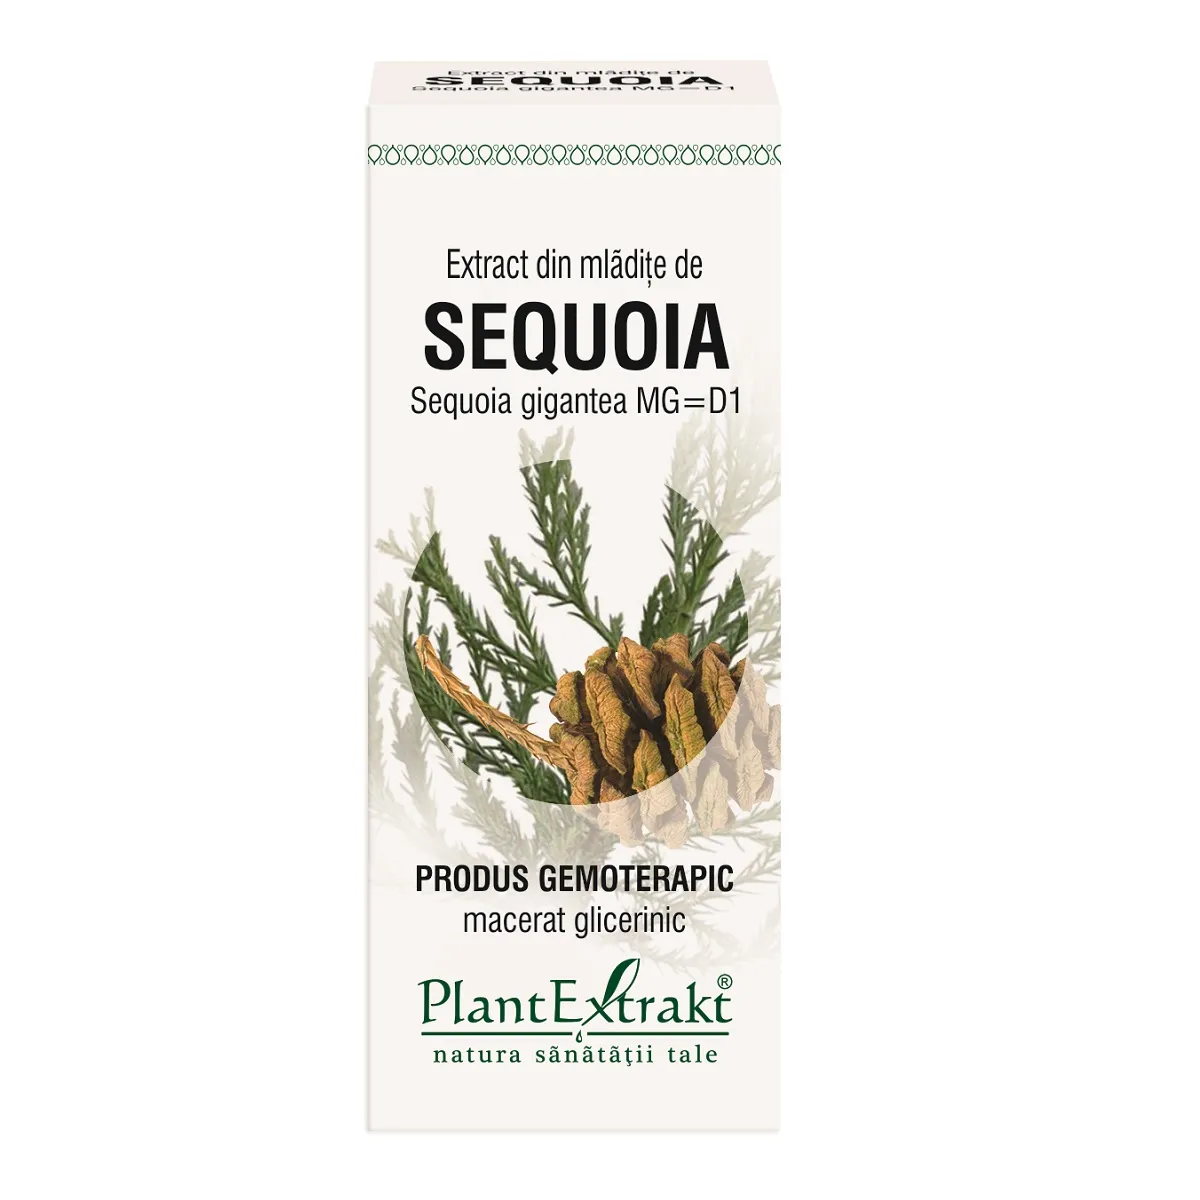 Extract din mladite de sequoia, 50ml, Plantextrakt